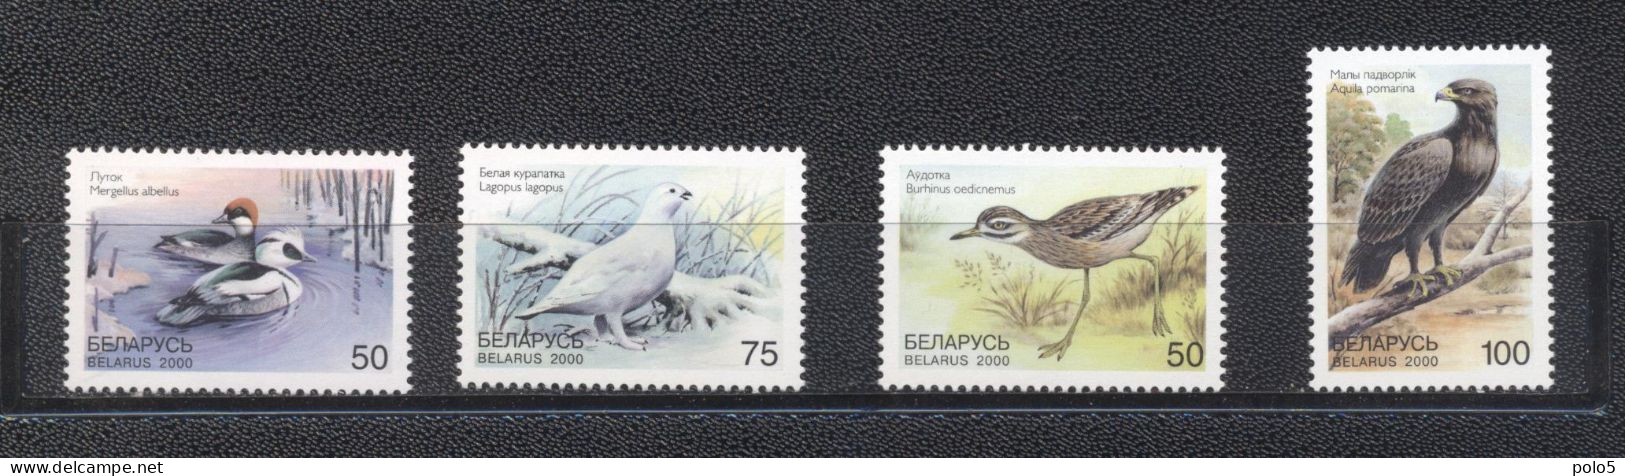 Belarus 2000- Rare Birds Of Belarus Set (4v) - Belarus